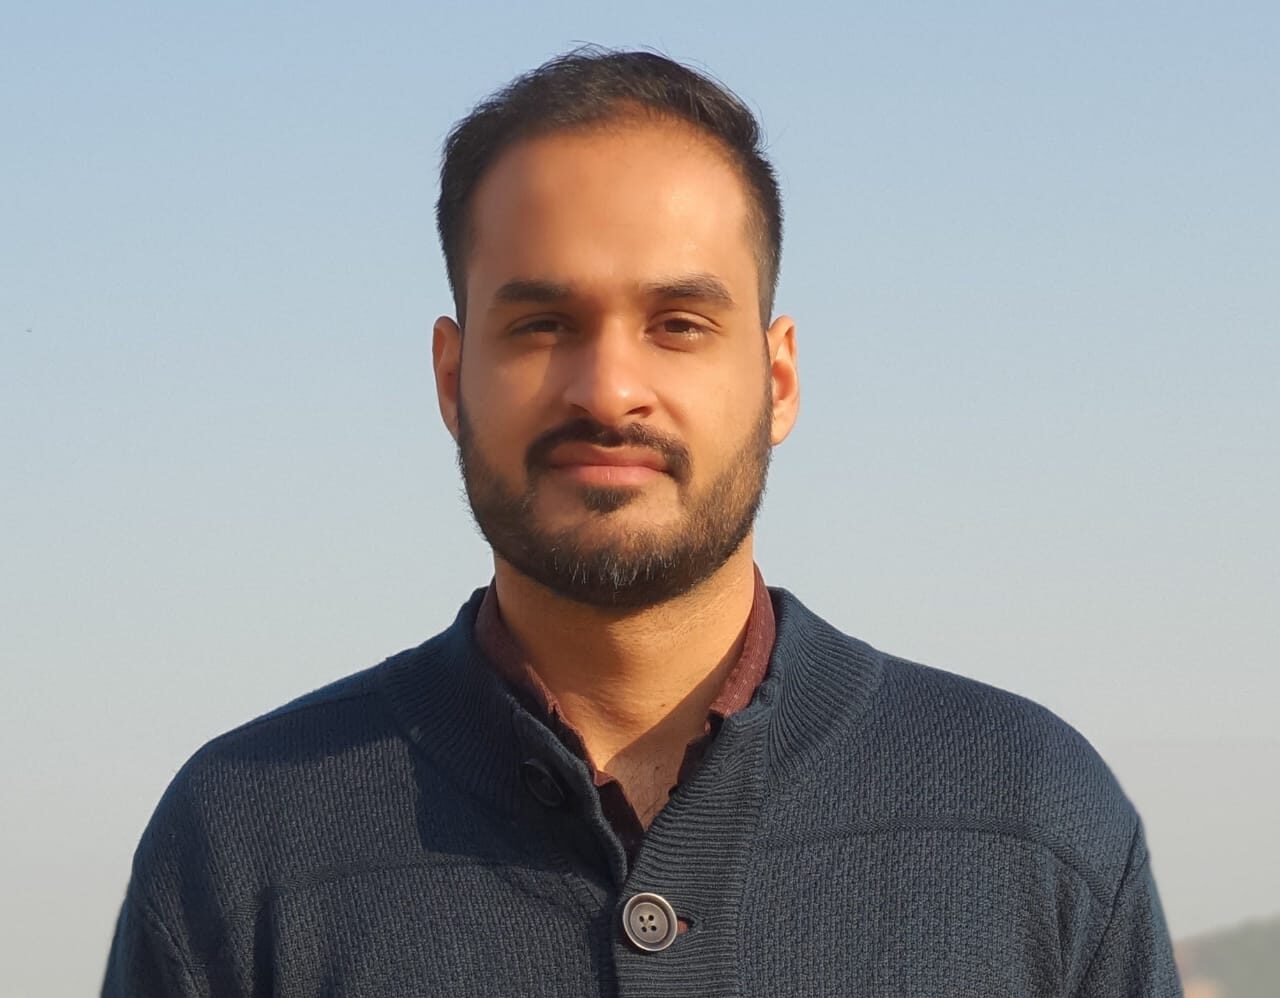 Saurabh Chopra, CEO of BalleBaazi.com